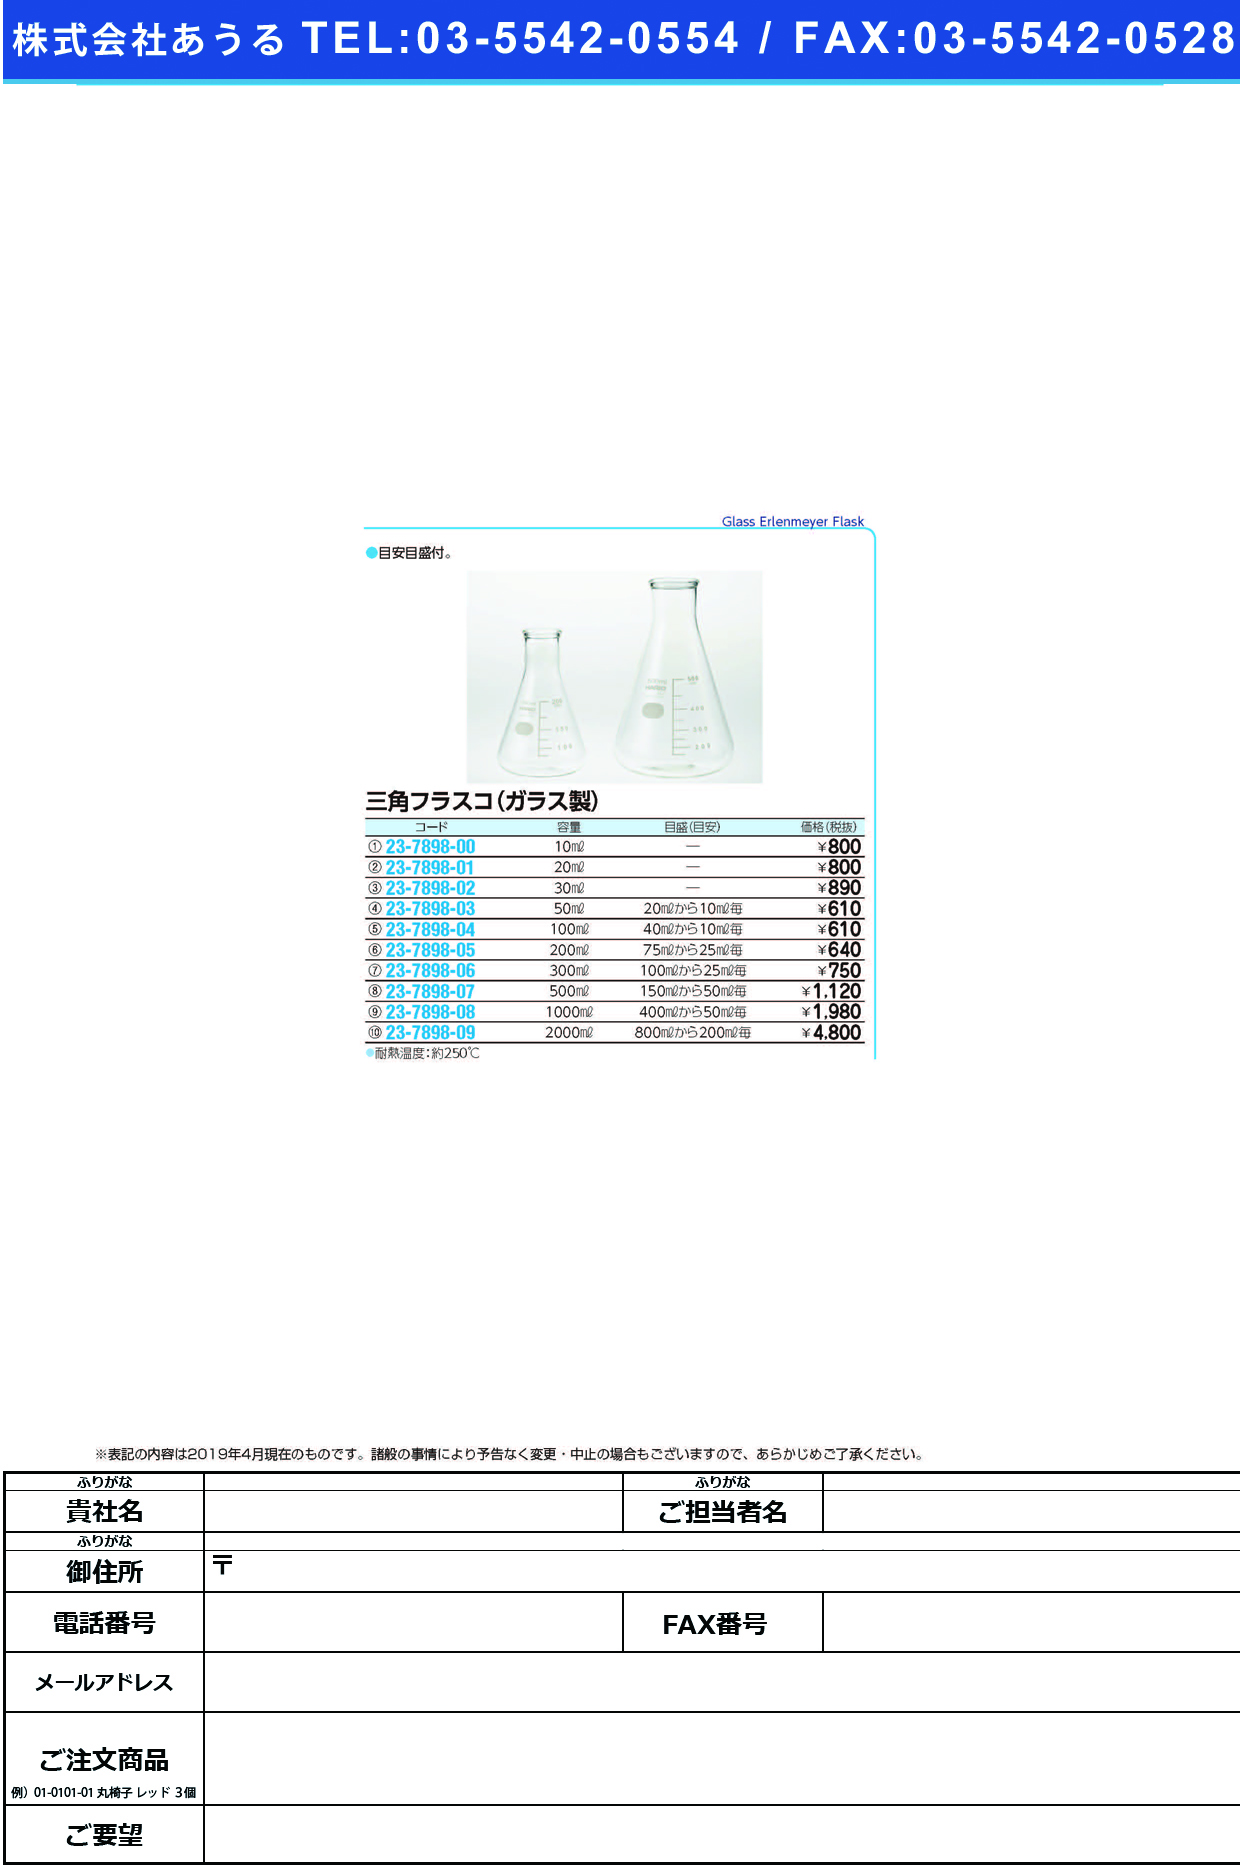 (23-7898-07)三角フラスコ（ガラス製） 500ML ｻﾝｶｸﾌﾗｽｺ(ｶﾞﾗｽｾｲ)【1個単位】【2019年カタログ商品】